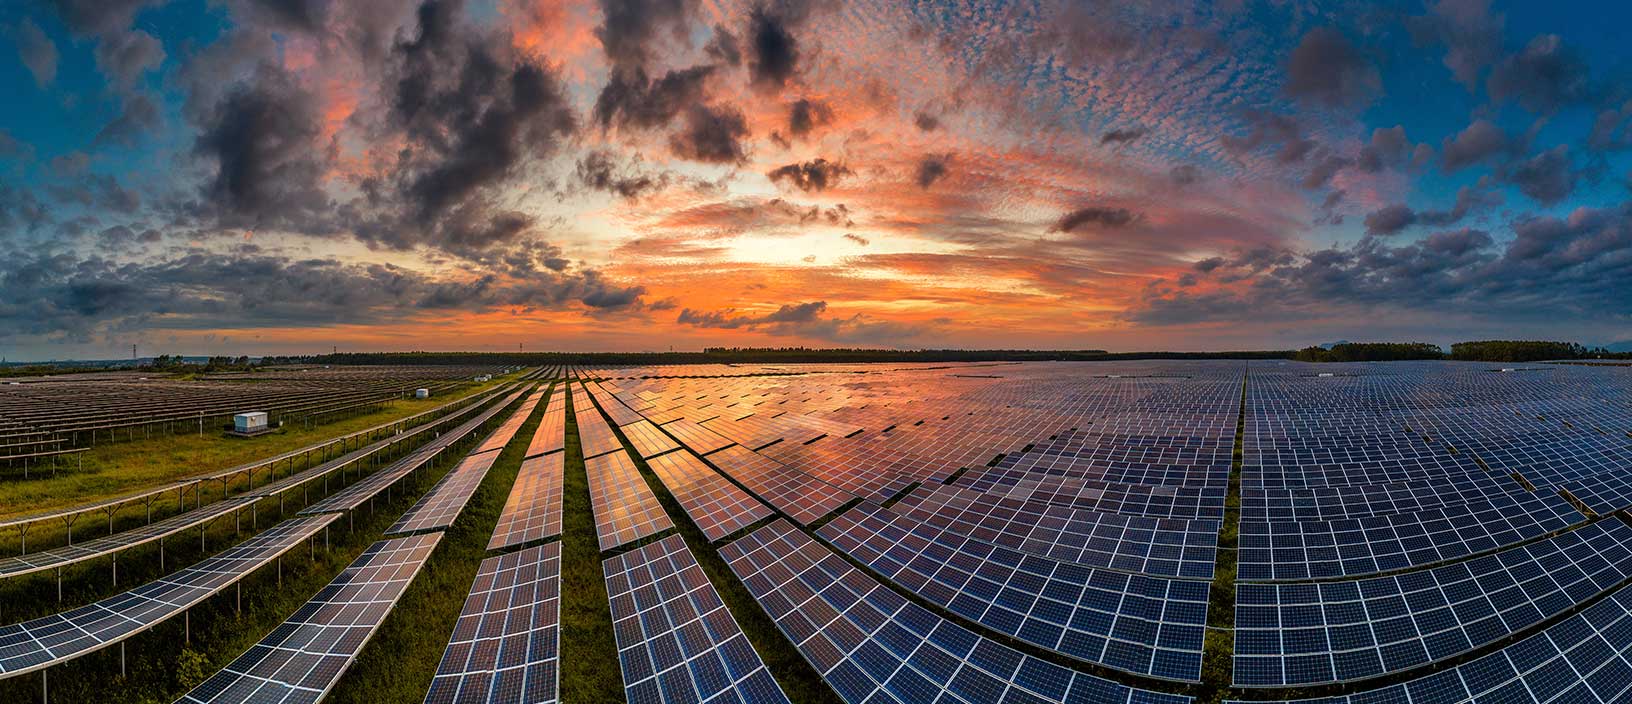 Une grande ferme de panneaux solaires témoigne de l’évolution d’Hexagon vers un avenir durable.